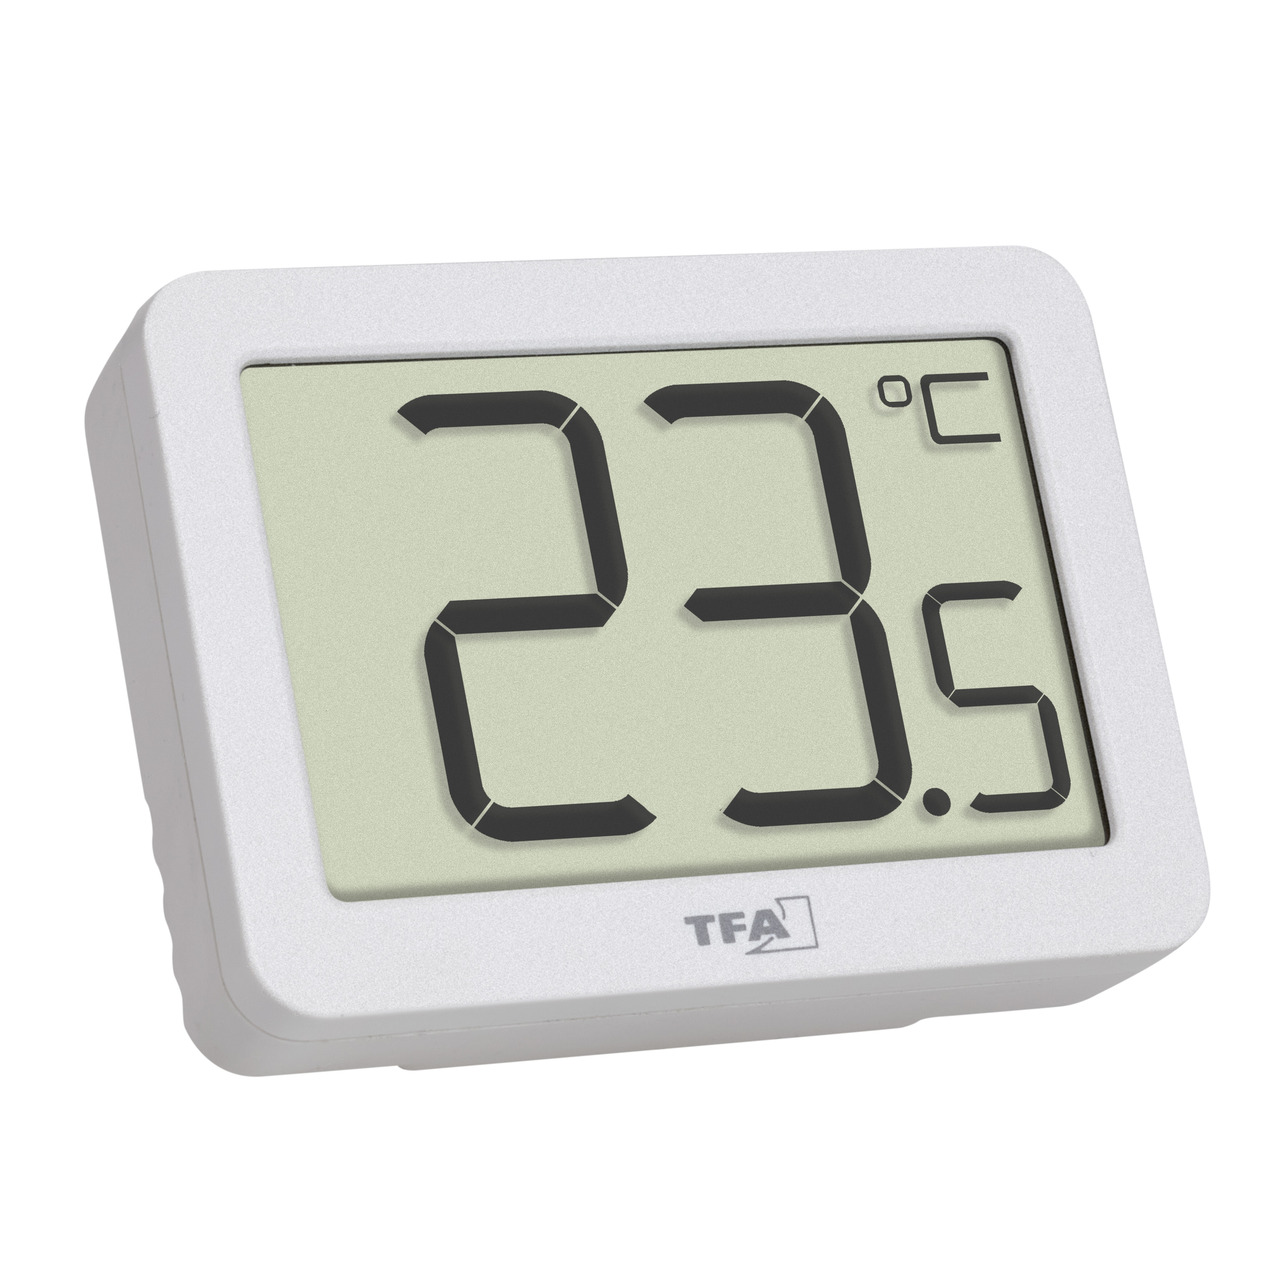 TFA Digitales Thermometer für Raumtemperatur-Erfassung- Magnetmontage- kompakt- weiss unter Klima - Wetter - Umwelt